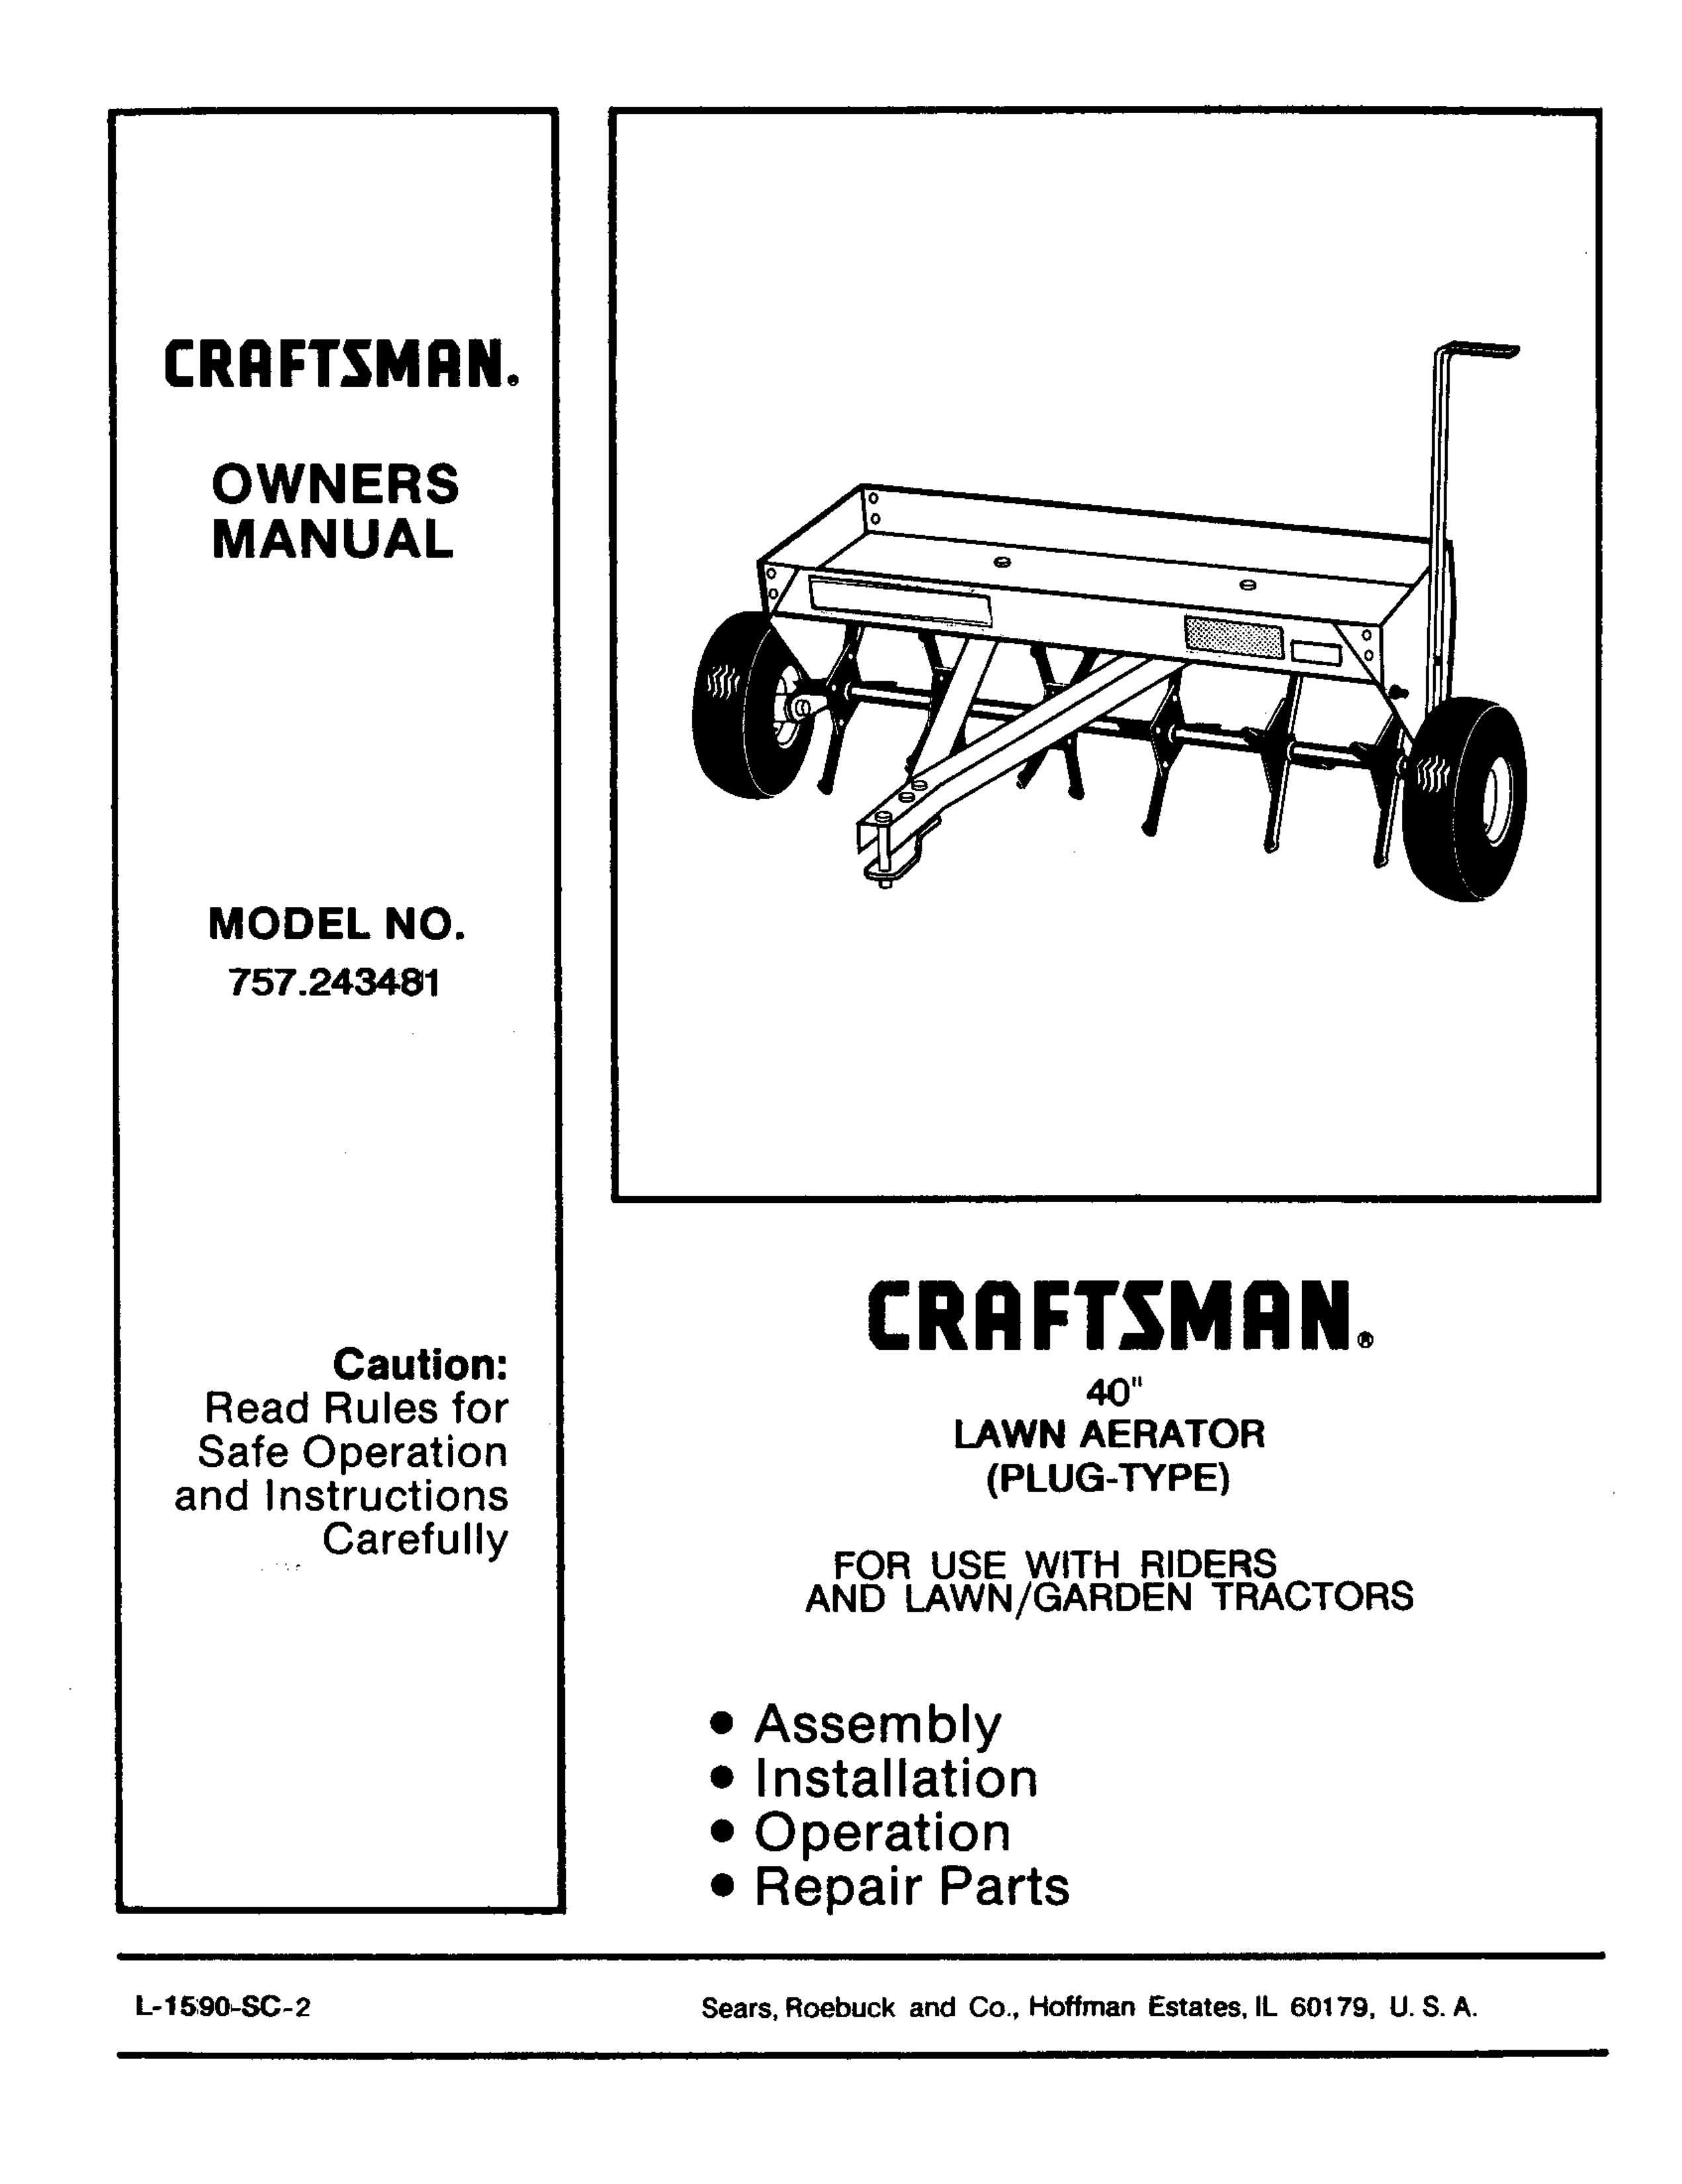 Craftsman 757.243481 Lawn Aerator User Manual